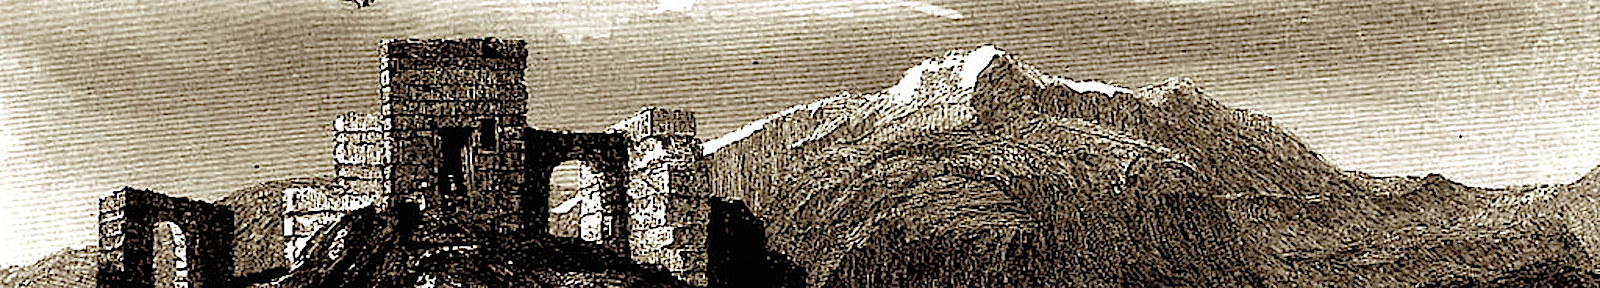 Гора Синай. Старинная гравюра